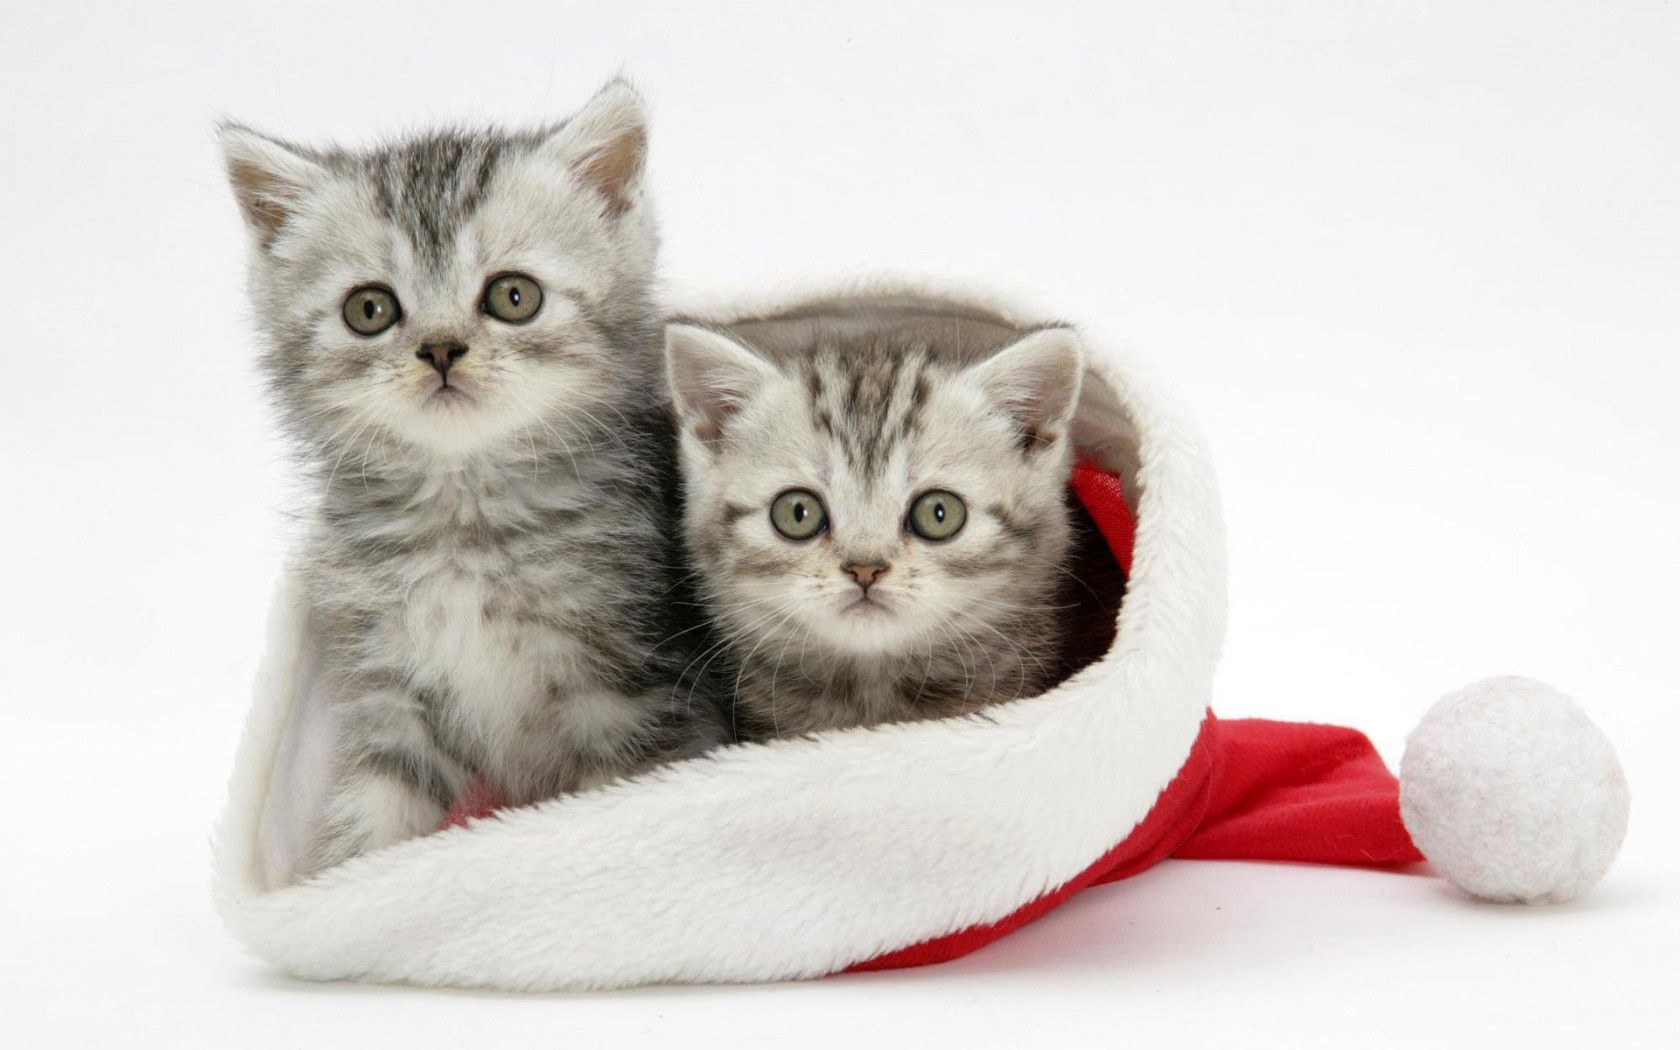 Cute Christmas Kittens HD desktop wallpaper, Widescreen, High Definition